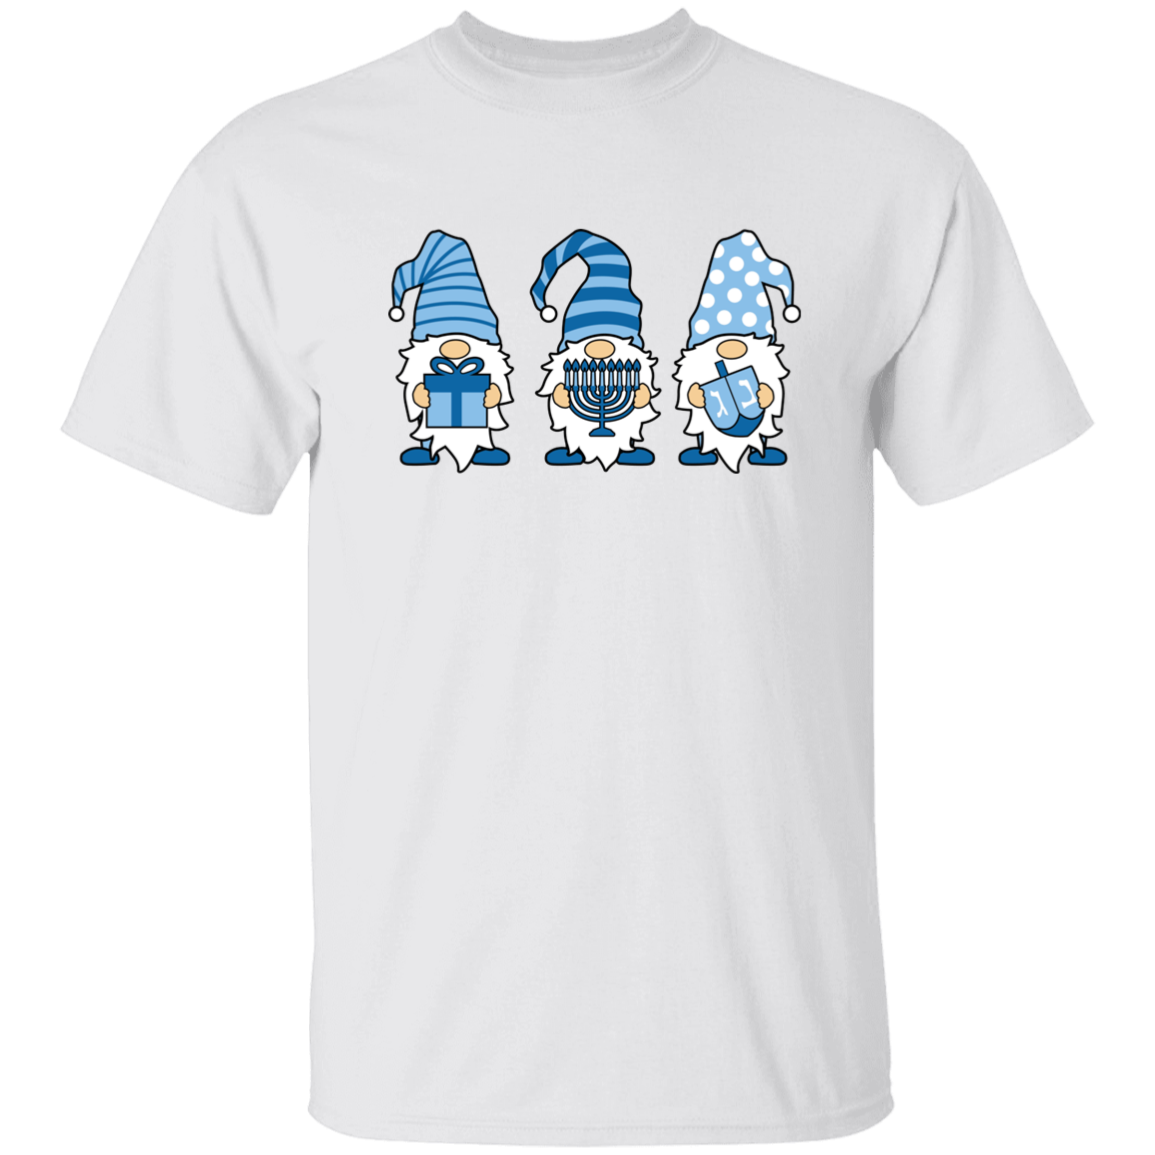 Hannukah Gnomes 5.3 oz. T-Shirt